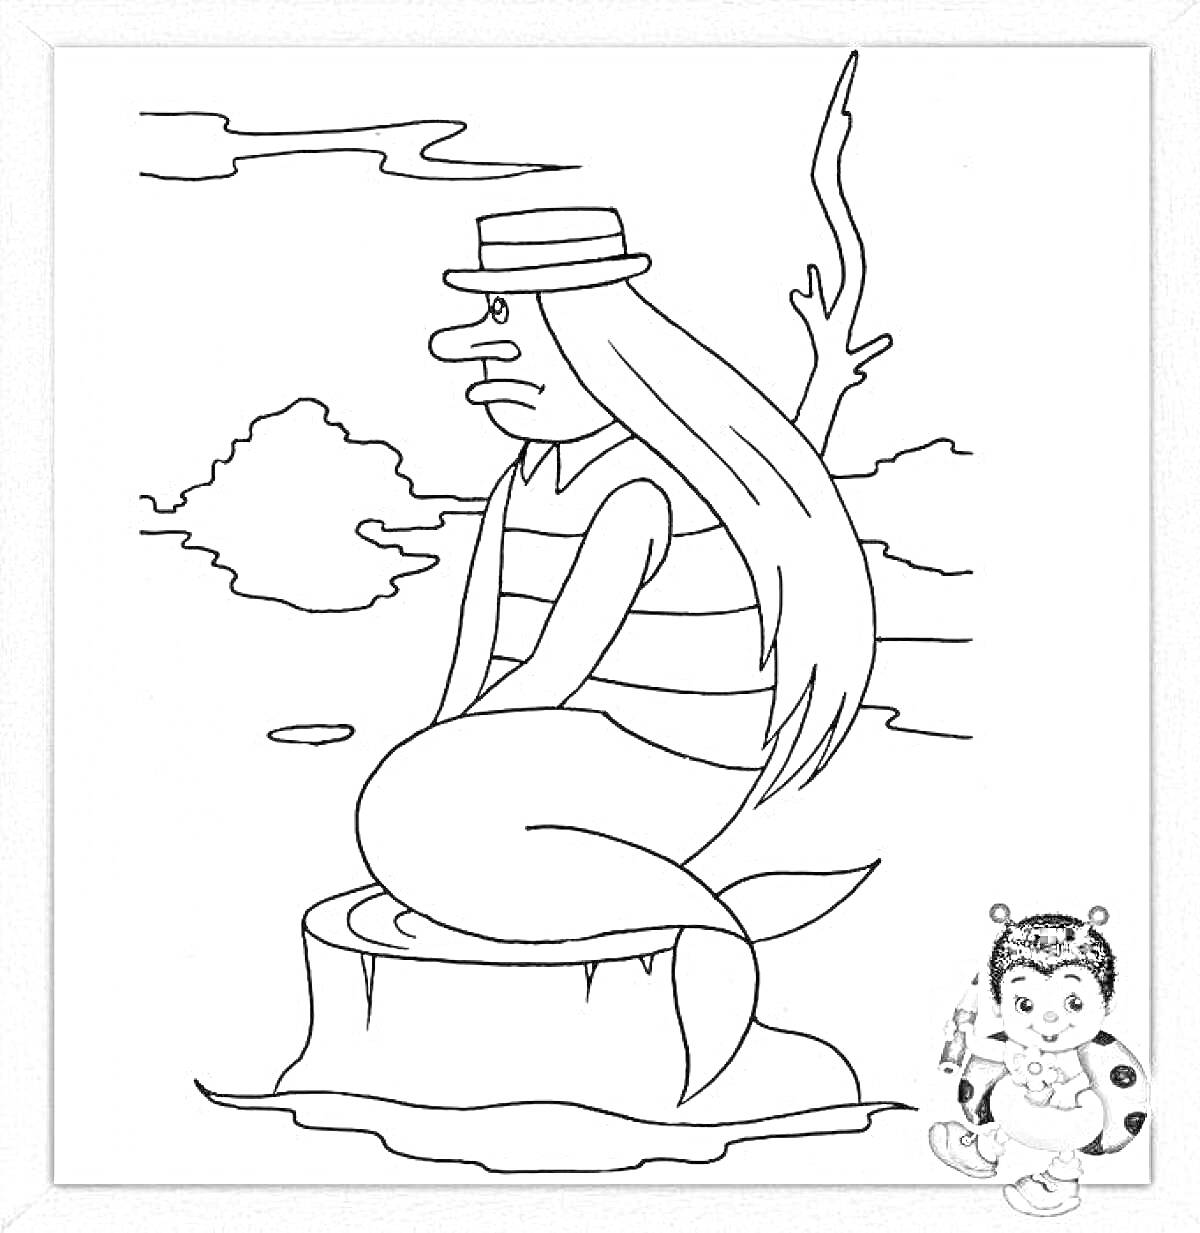 Раскраска Русалка с длинными волосами в шляпе, сидящая на камне возле водоема, деревья и облака на заднем плане, справа внизу сидит ребенок в костюме божьей коровки с игрушками